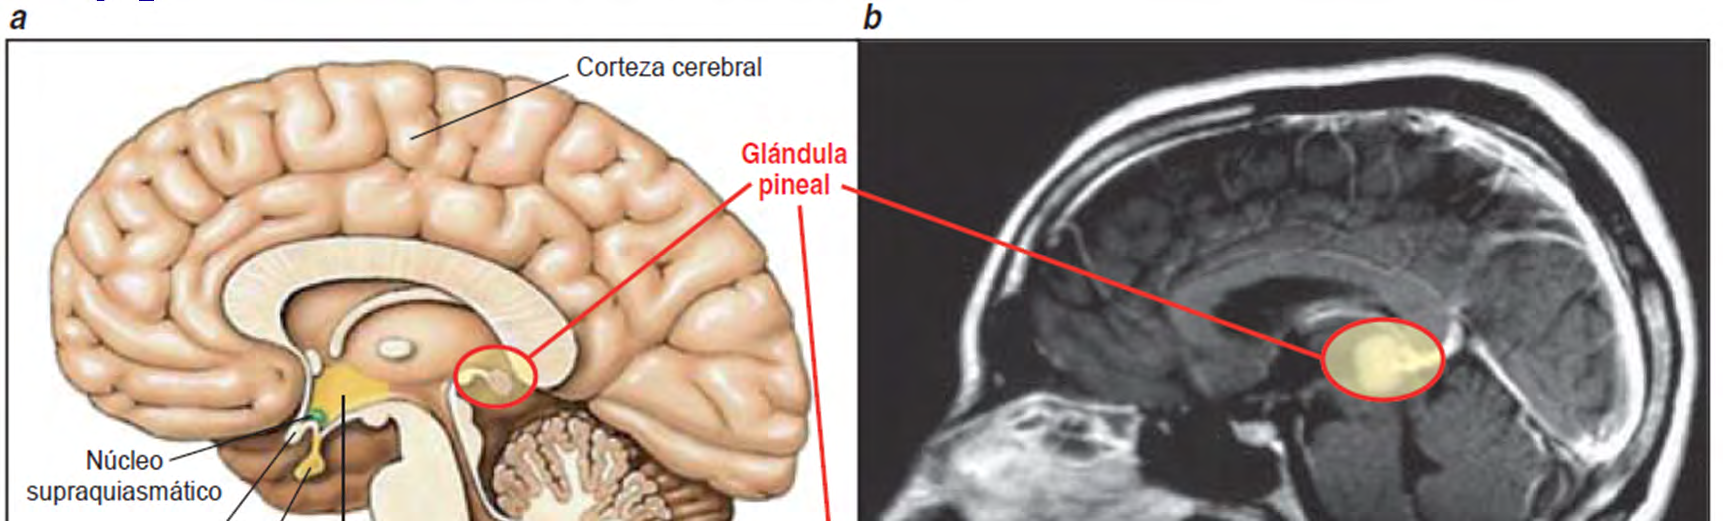 Glándula Pineal y Melatonina La melatonina se produce en la glándula